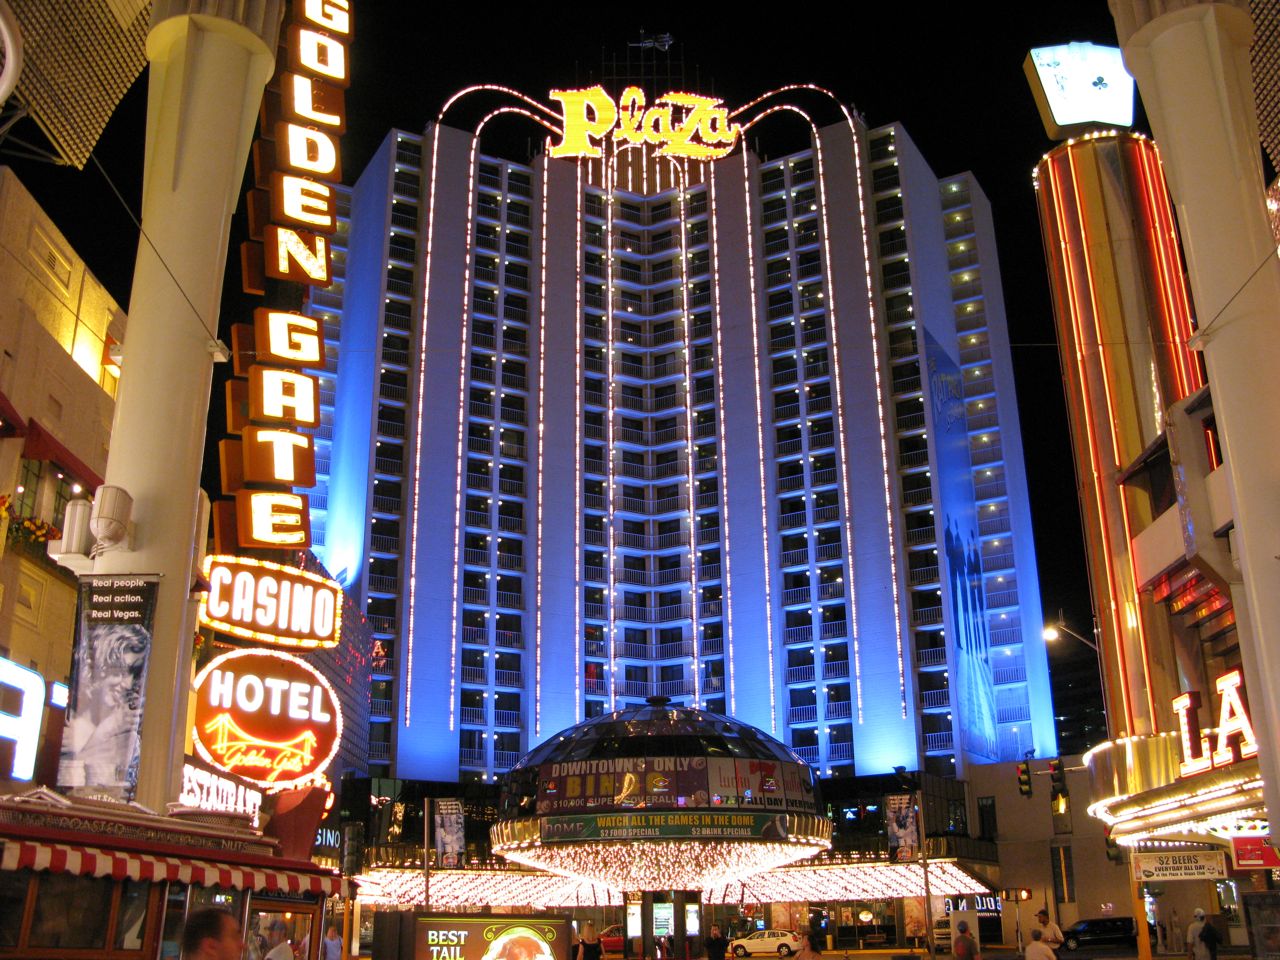 The Plaza Vegas